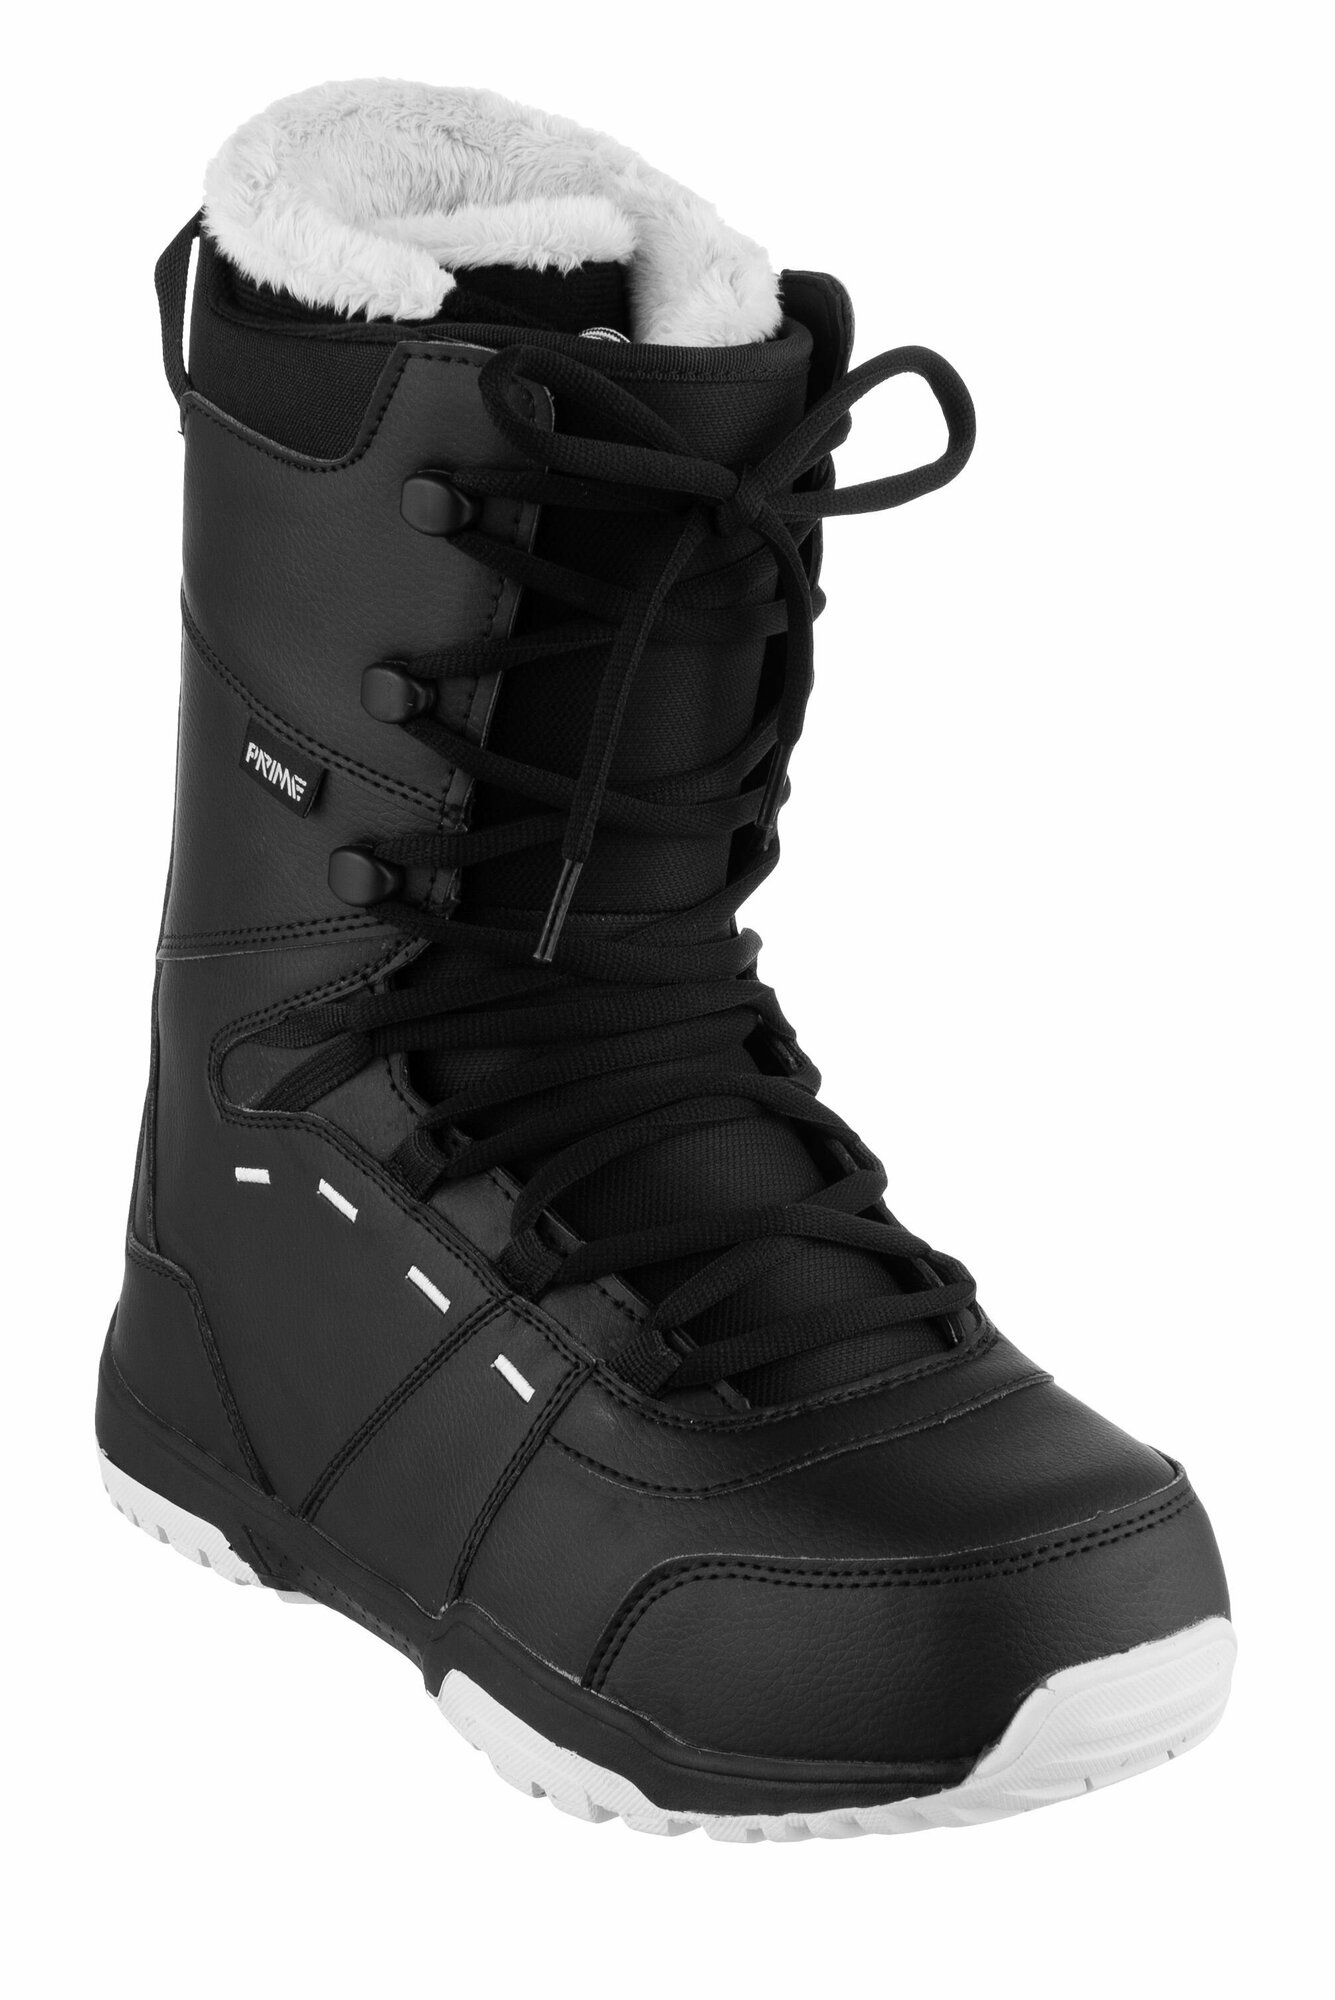 Ботинки сноубордические PRIME FUN-F1 Black (44 RU / 29,5 cm)